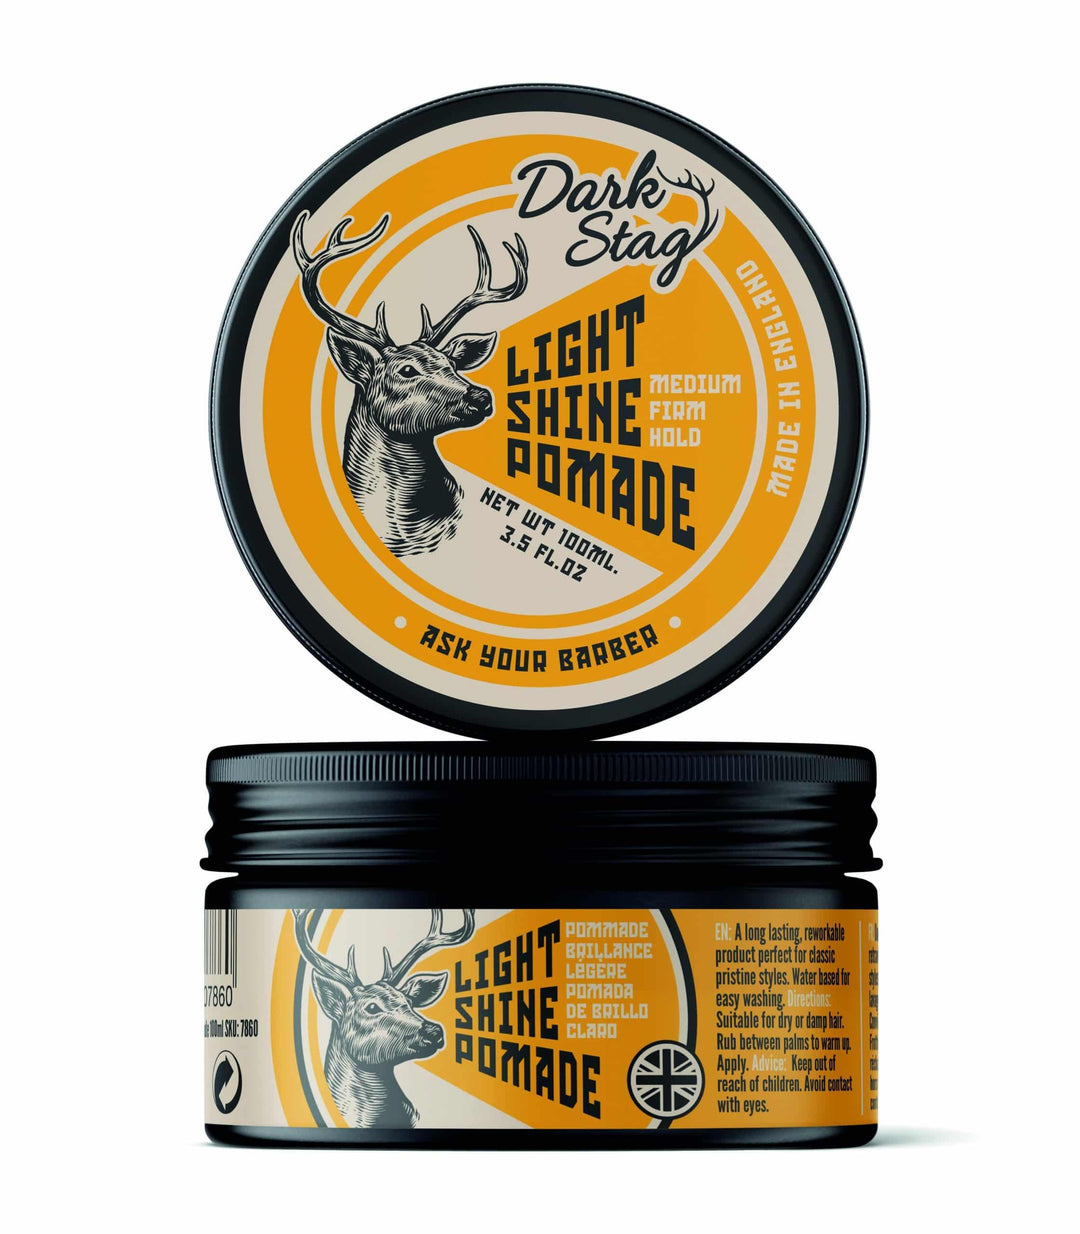 Dark Stag Light Shine Pomade | Pomade | Dark Stag | JK SHOP | JK Barber og herre frisør | Lavepriser | Best